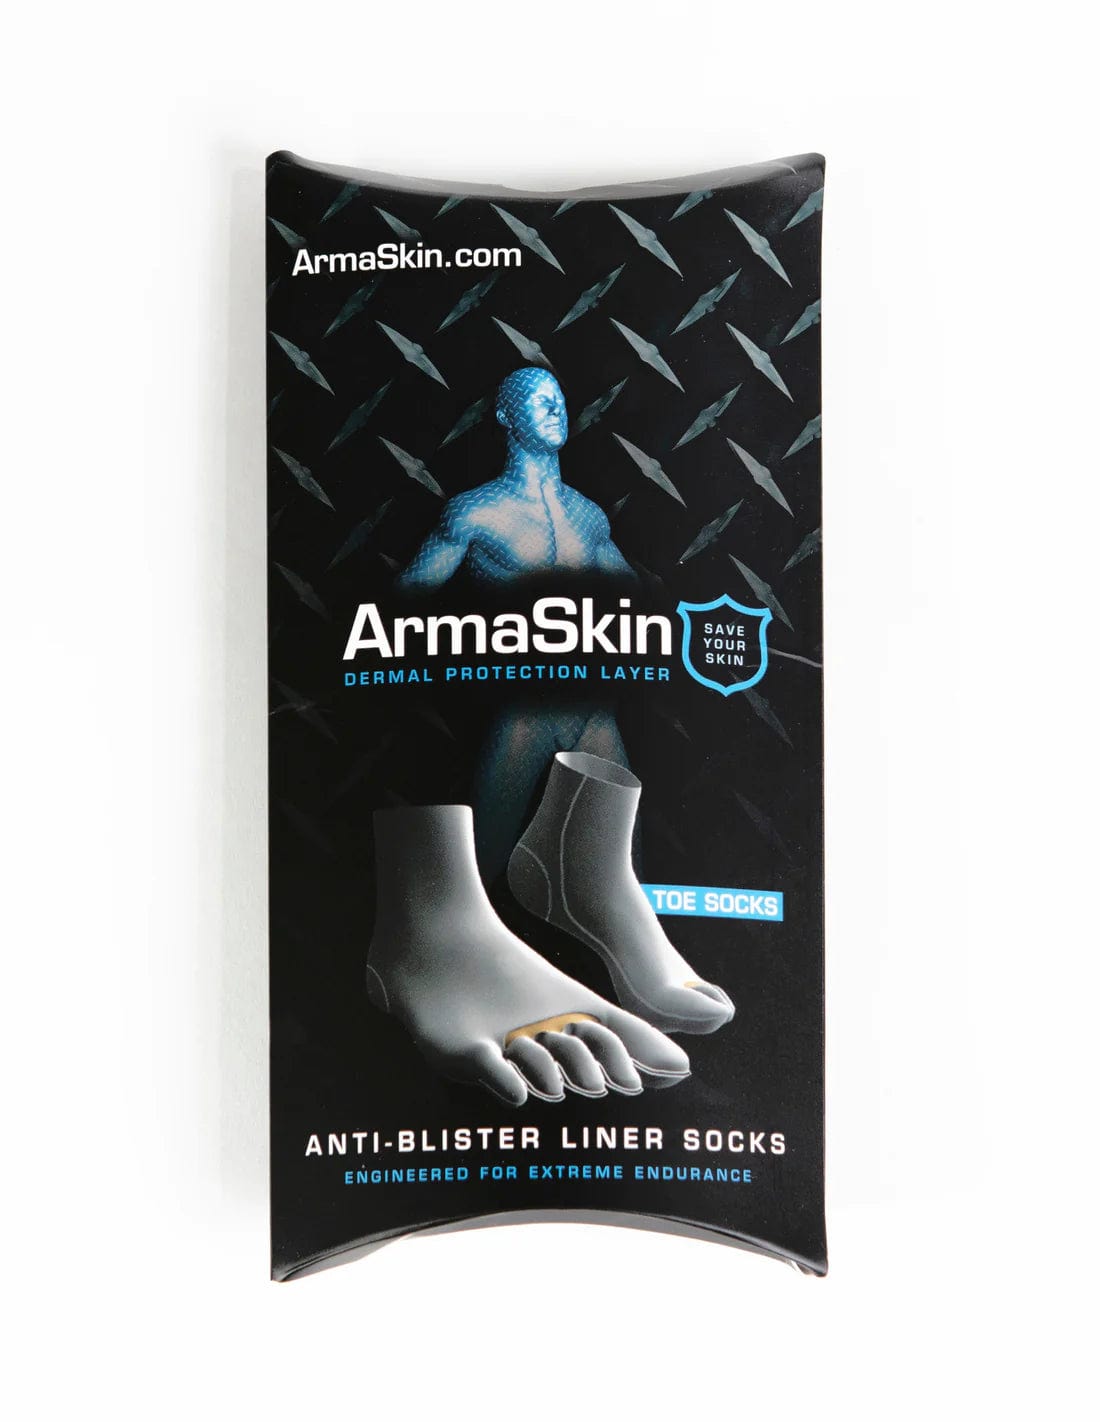 ArmaSkin Toe Socks packaging